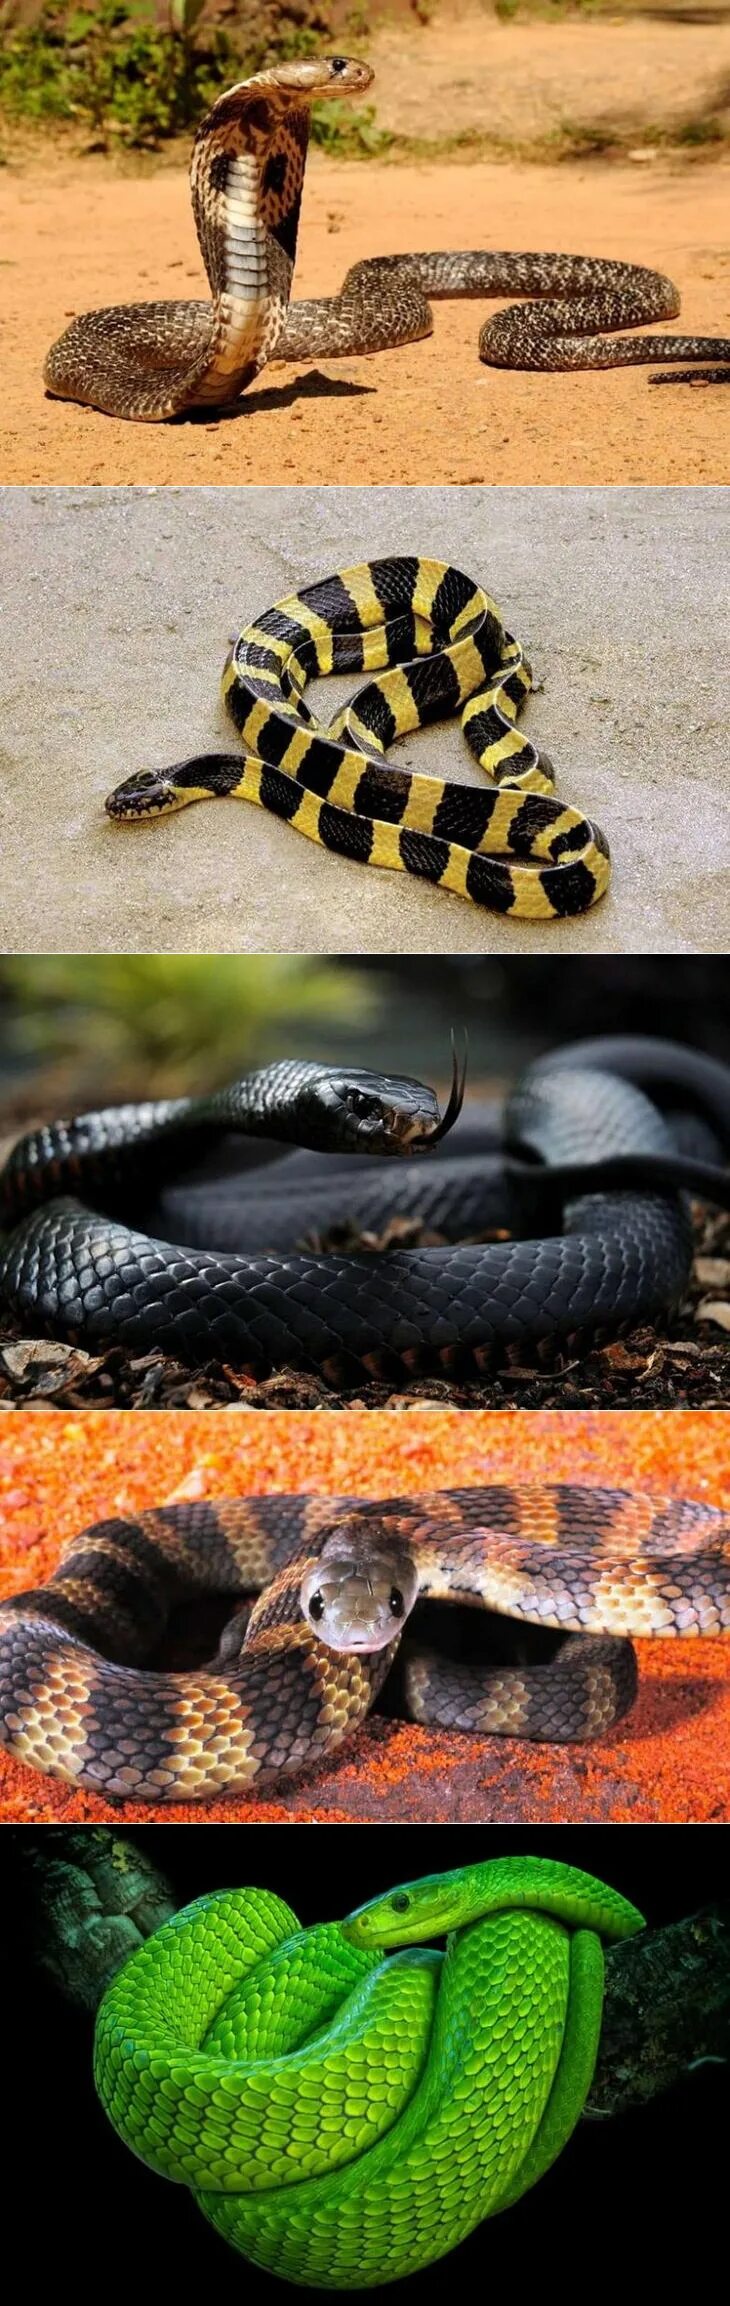 Про змей убийц. Самая ядовитая гадюка в мире. Самая опасная змея. Самая опасная змея в мире. Неядовитая змея.